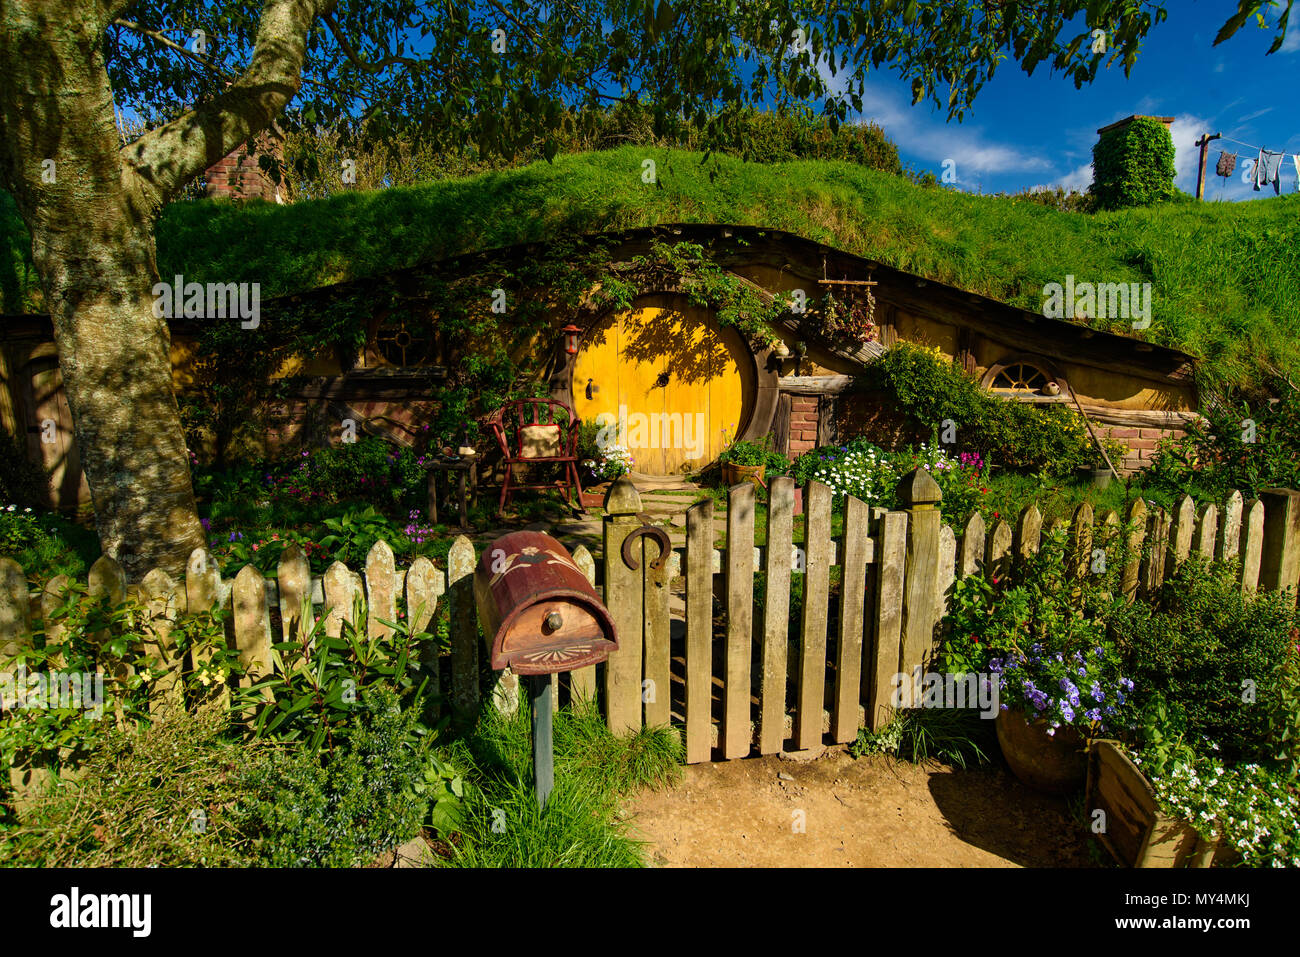 Hobbiton Movie set di Shire nel Signore degli Anelli e Lo Hobbit trilogie, Matamata Foto Stock